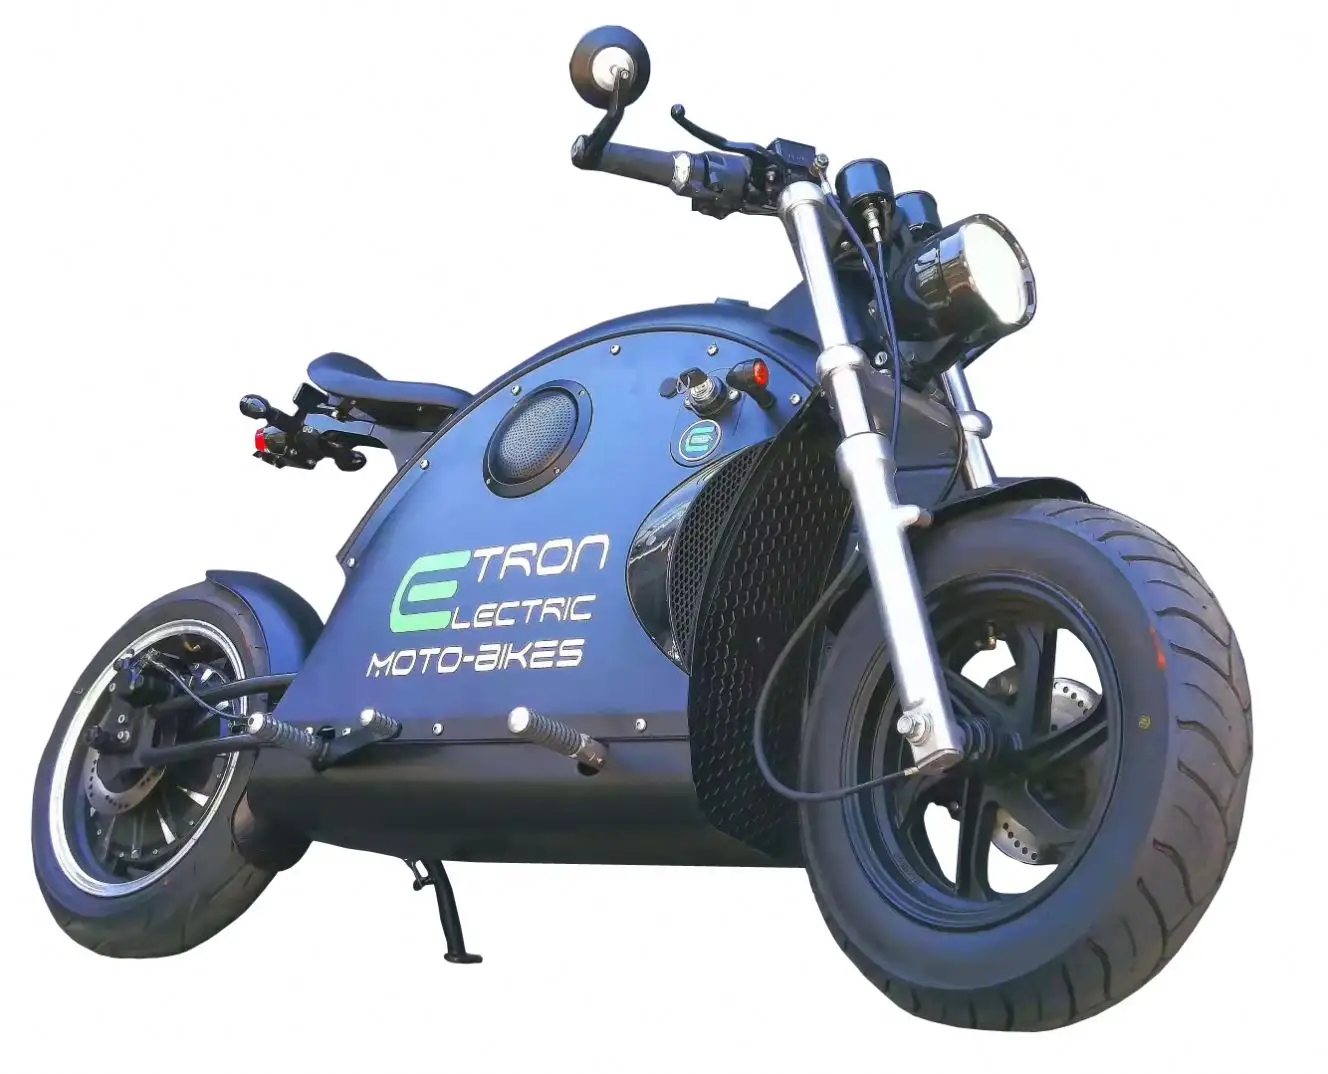 Nuovo/usato B-M-W Sport bike M 1000 RR moto per la vendita